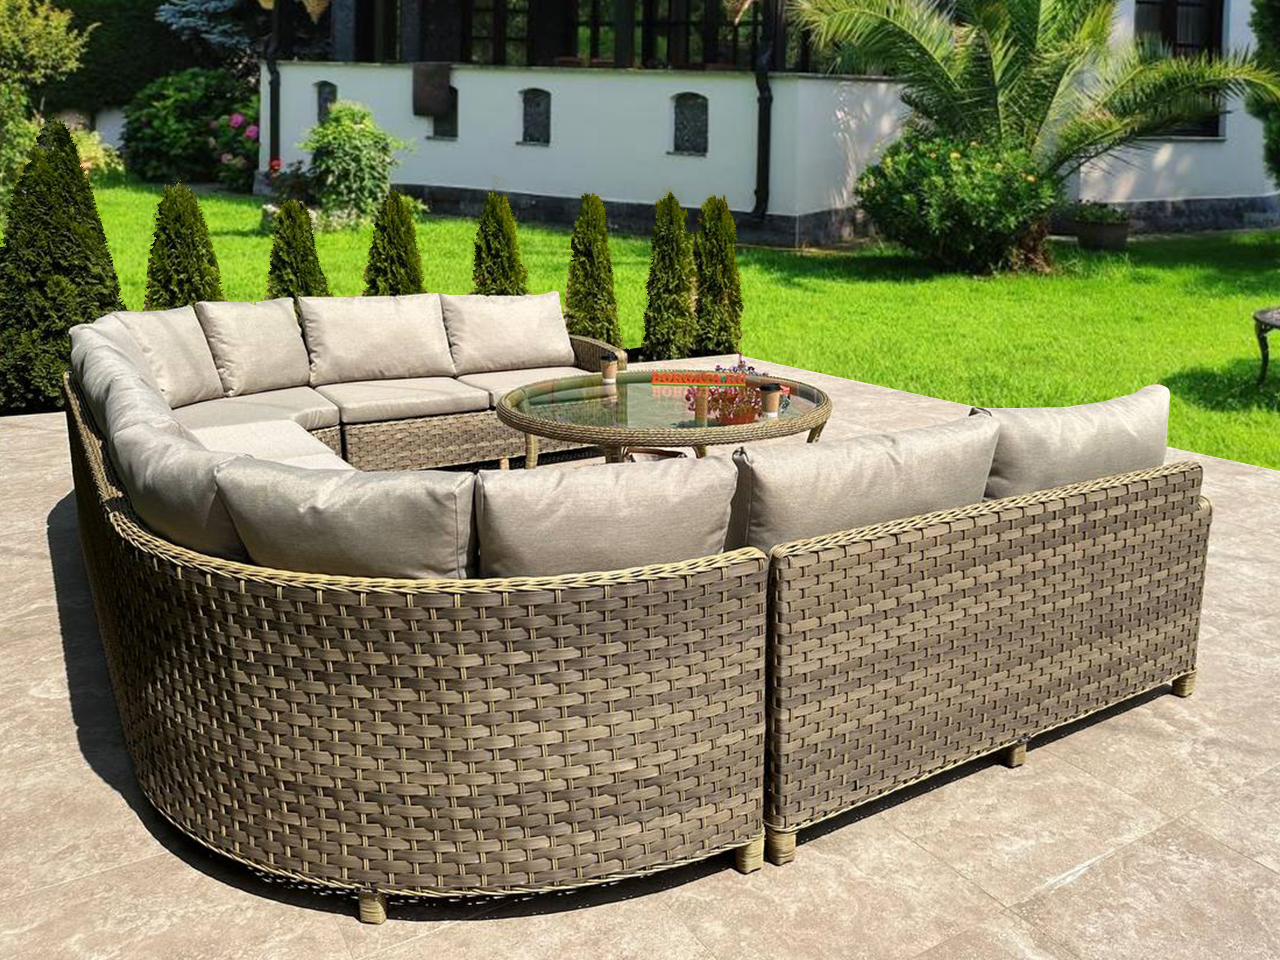 П-образный модульный диван ARIA nature с кофейным столиком D150 ARIA для беседки или террасы загородного особняка